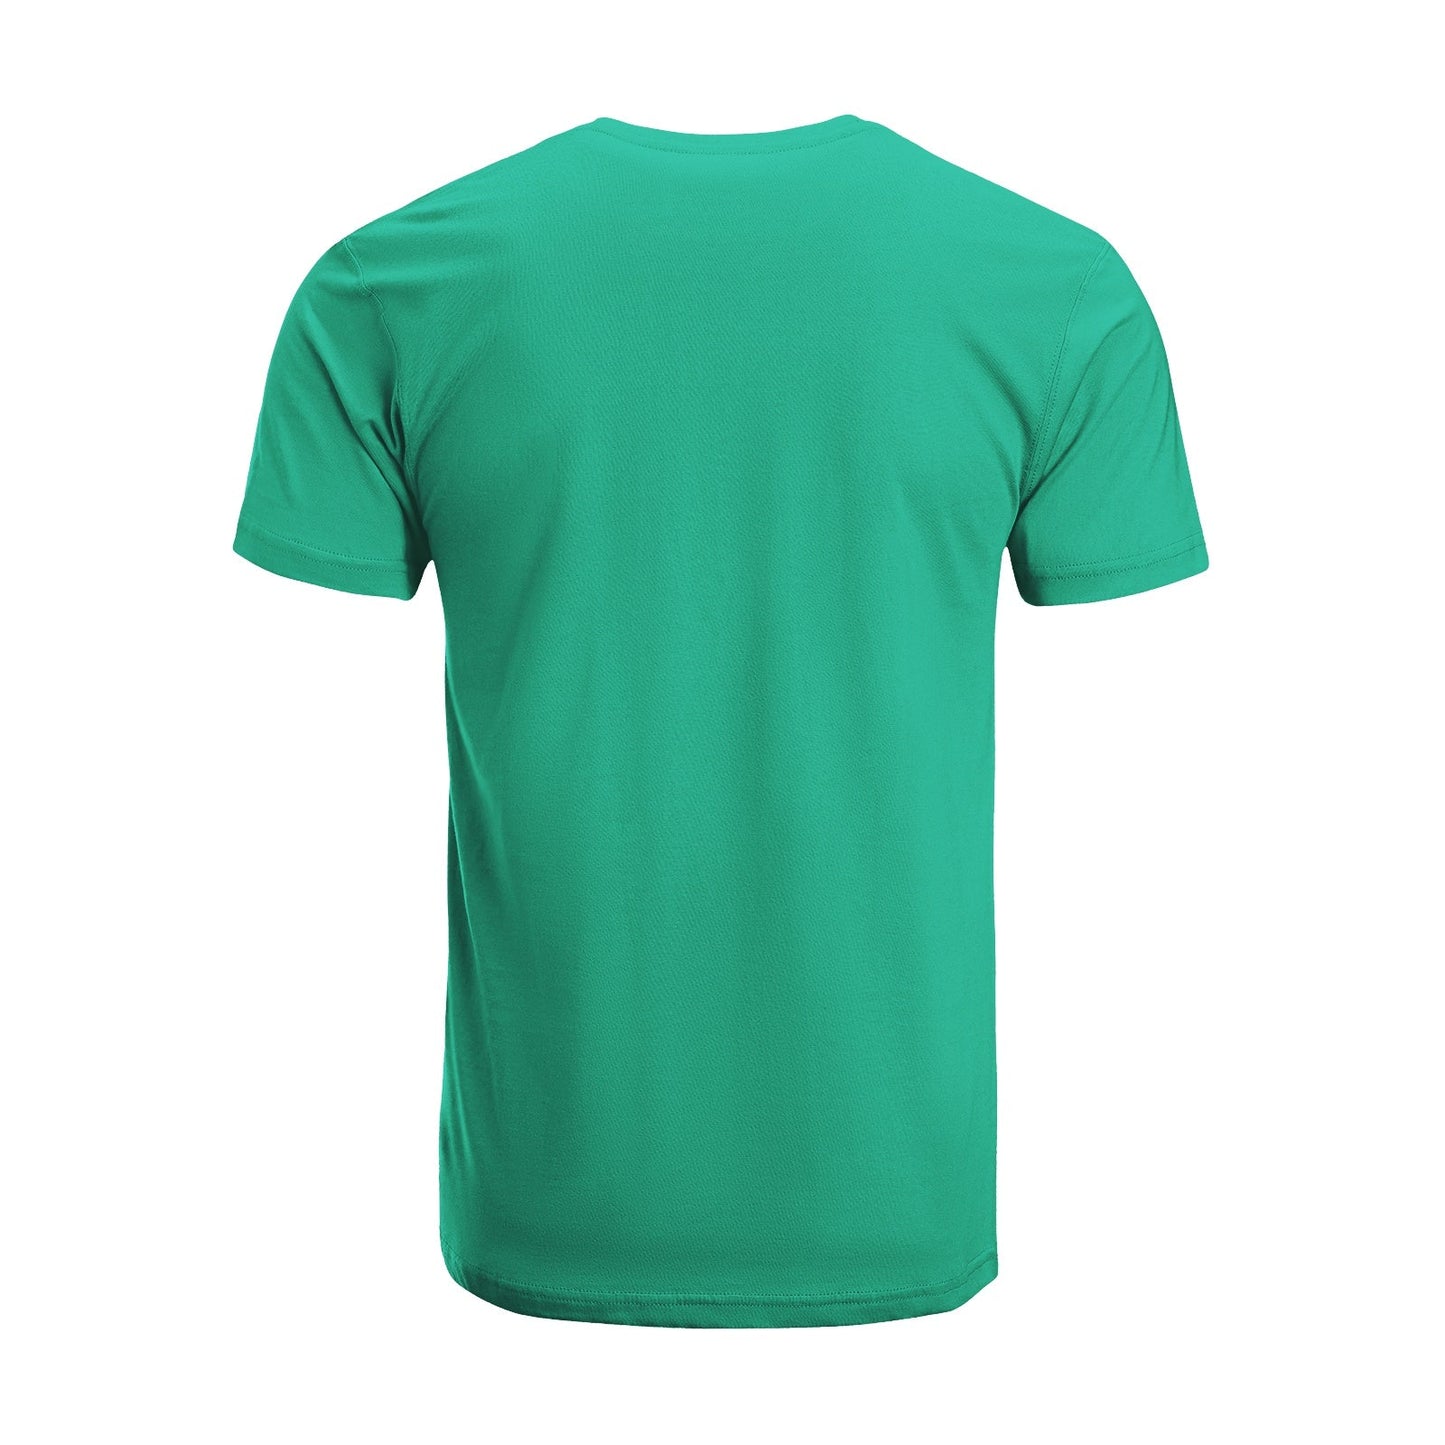 Unisex Short Sleeve Crew Neck Cotton Jersey T-Shirt TRUCK 21